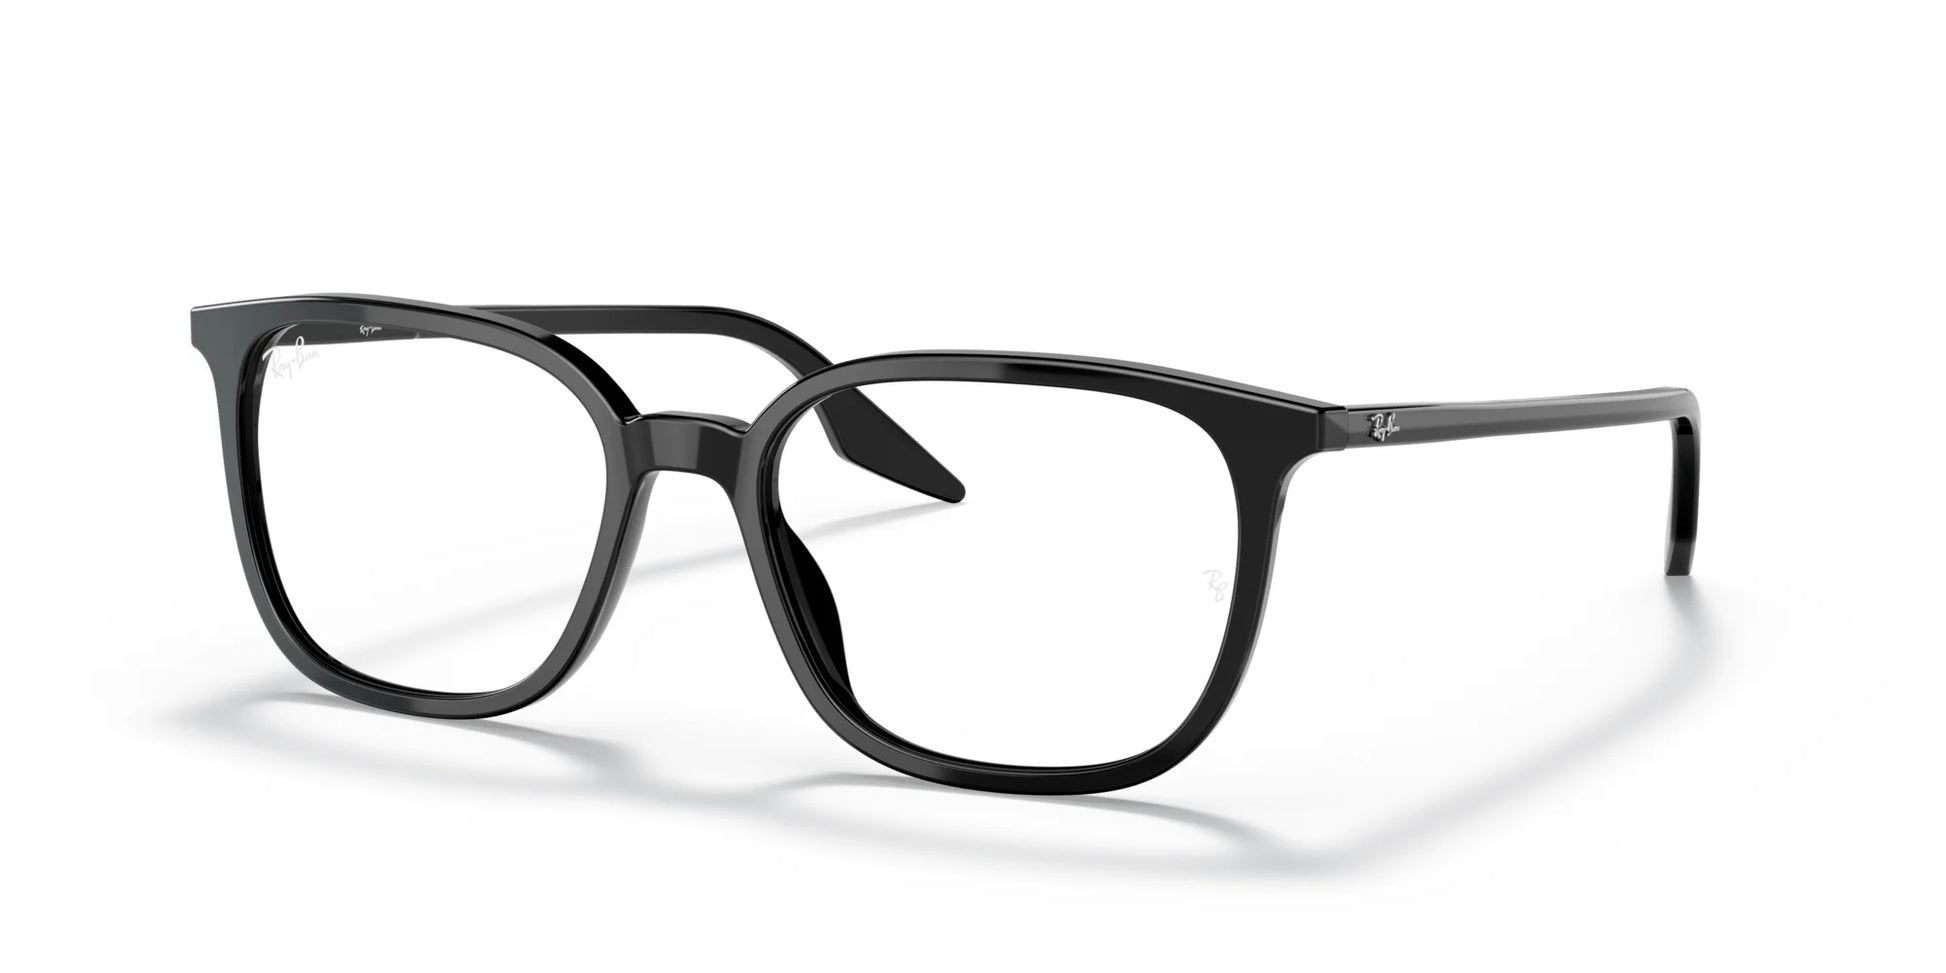 Ray-Ban RX5406F Eyeglasses Black